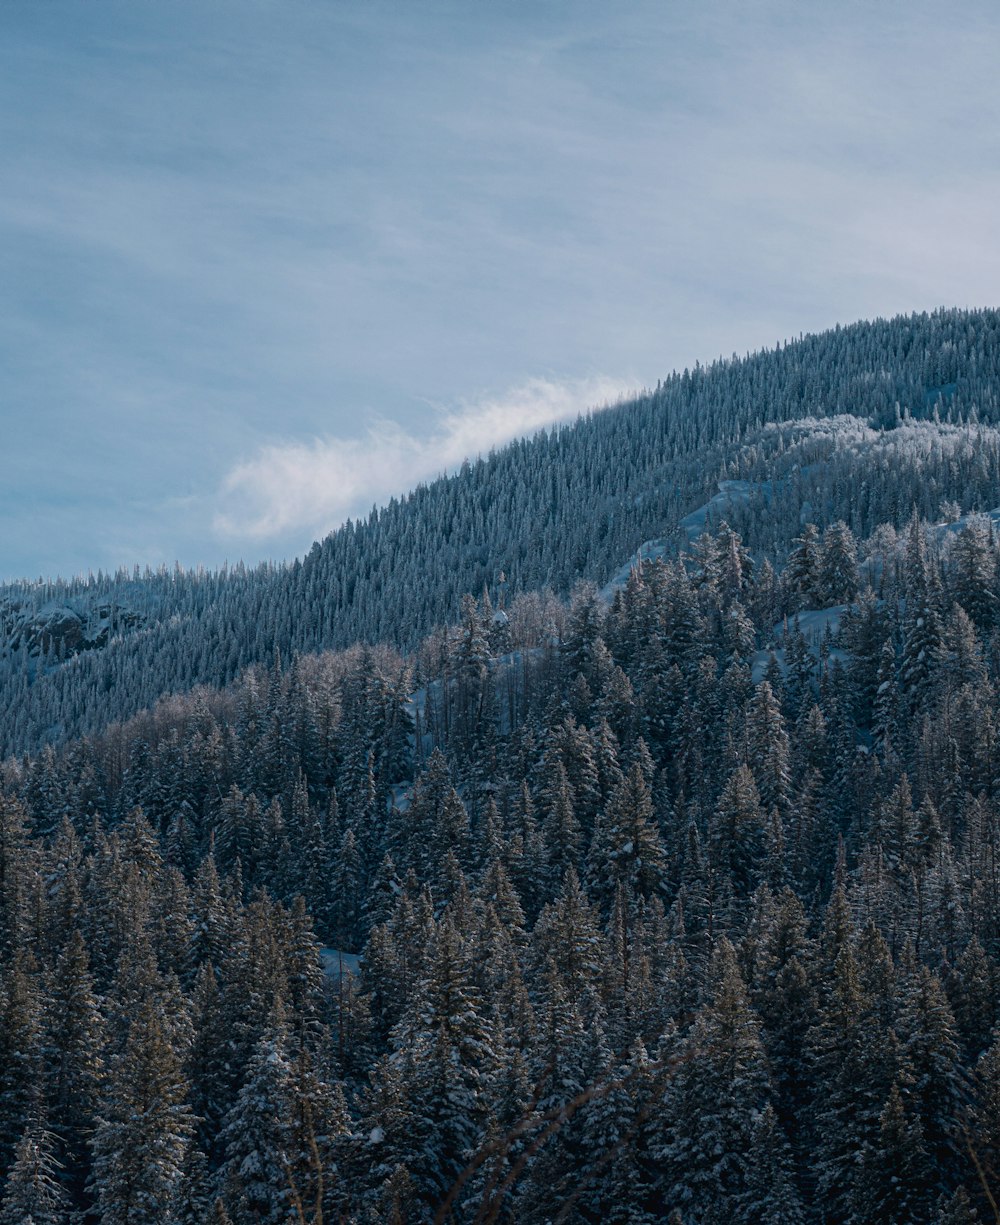 Una montaña cubierta de nieve y árboles bajo un cielo azul